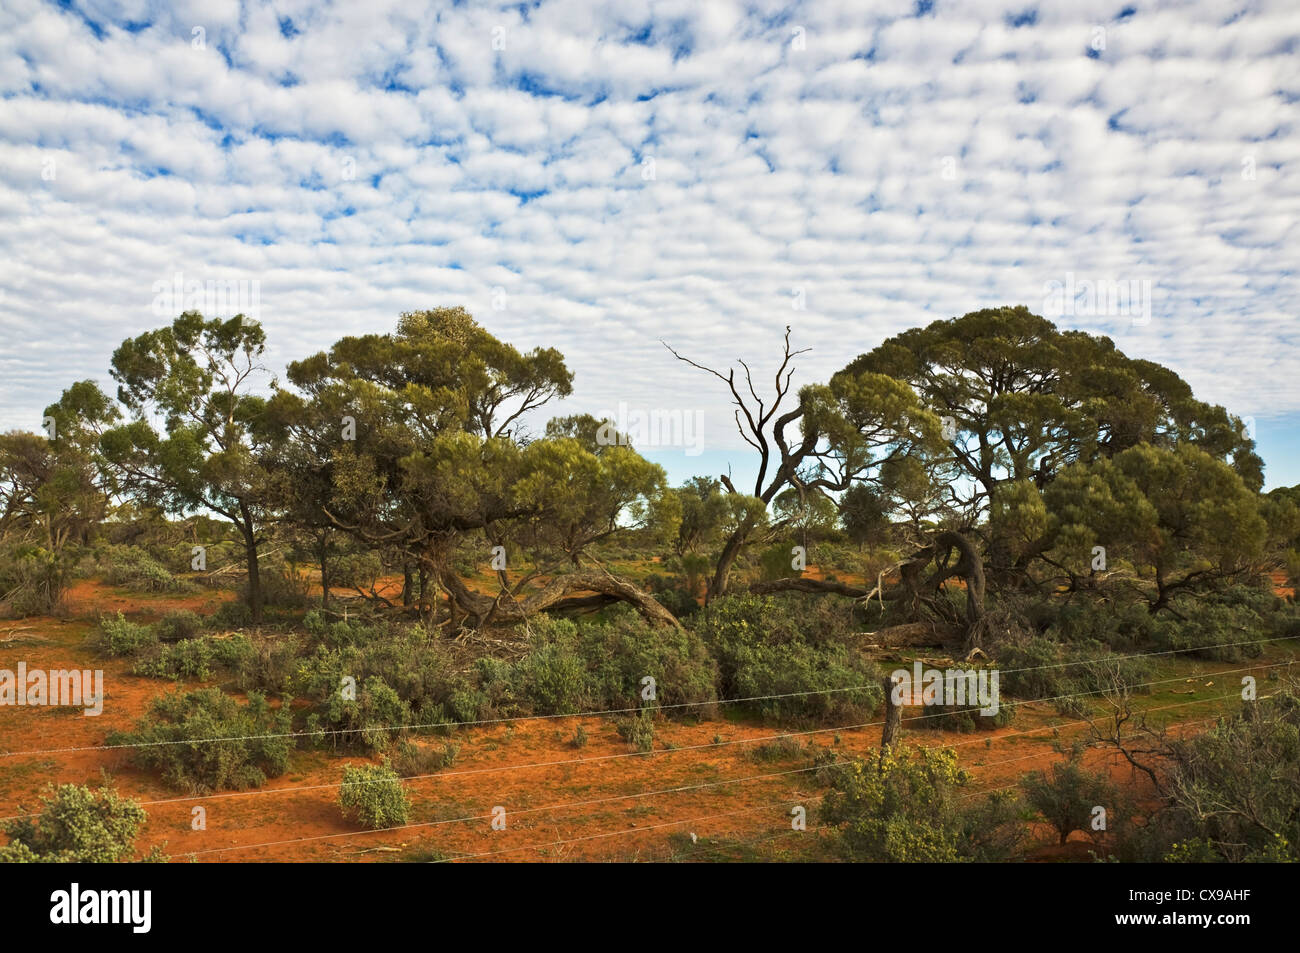 Le centre rouge dans l'outback australien Banque D'Images